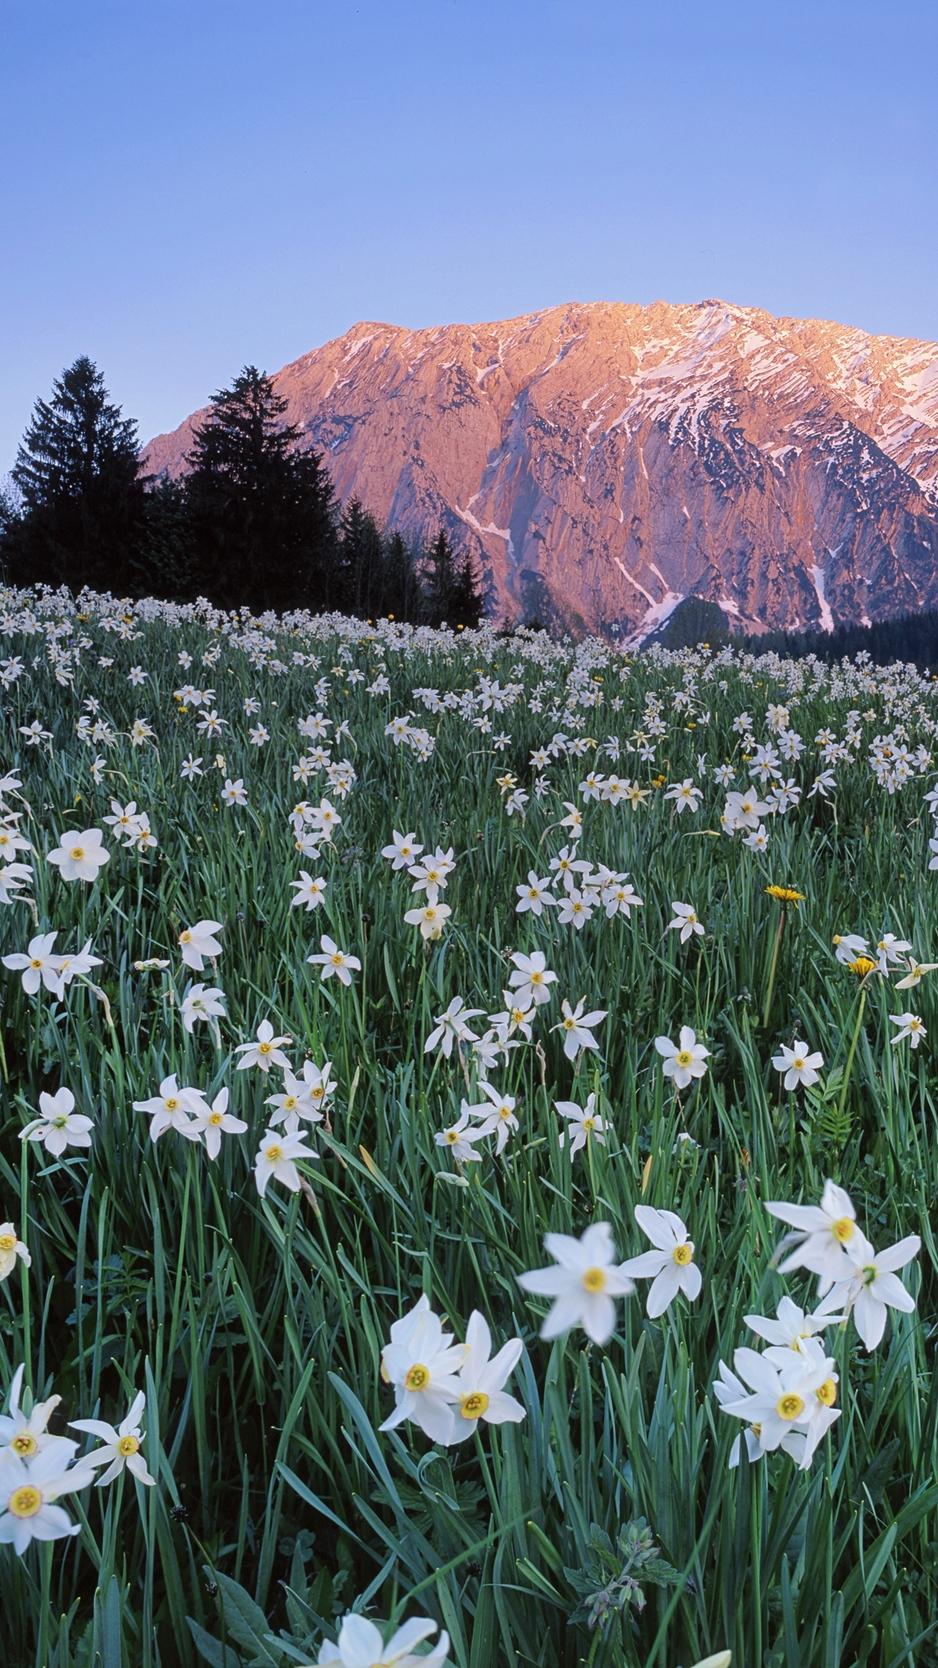 Download wallpaper 938x1668 austria, meadow, field, flowers